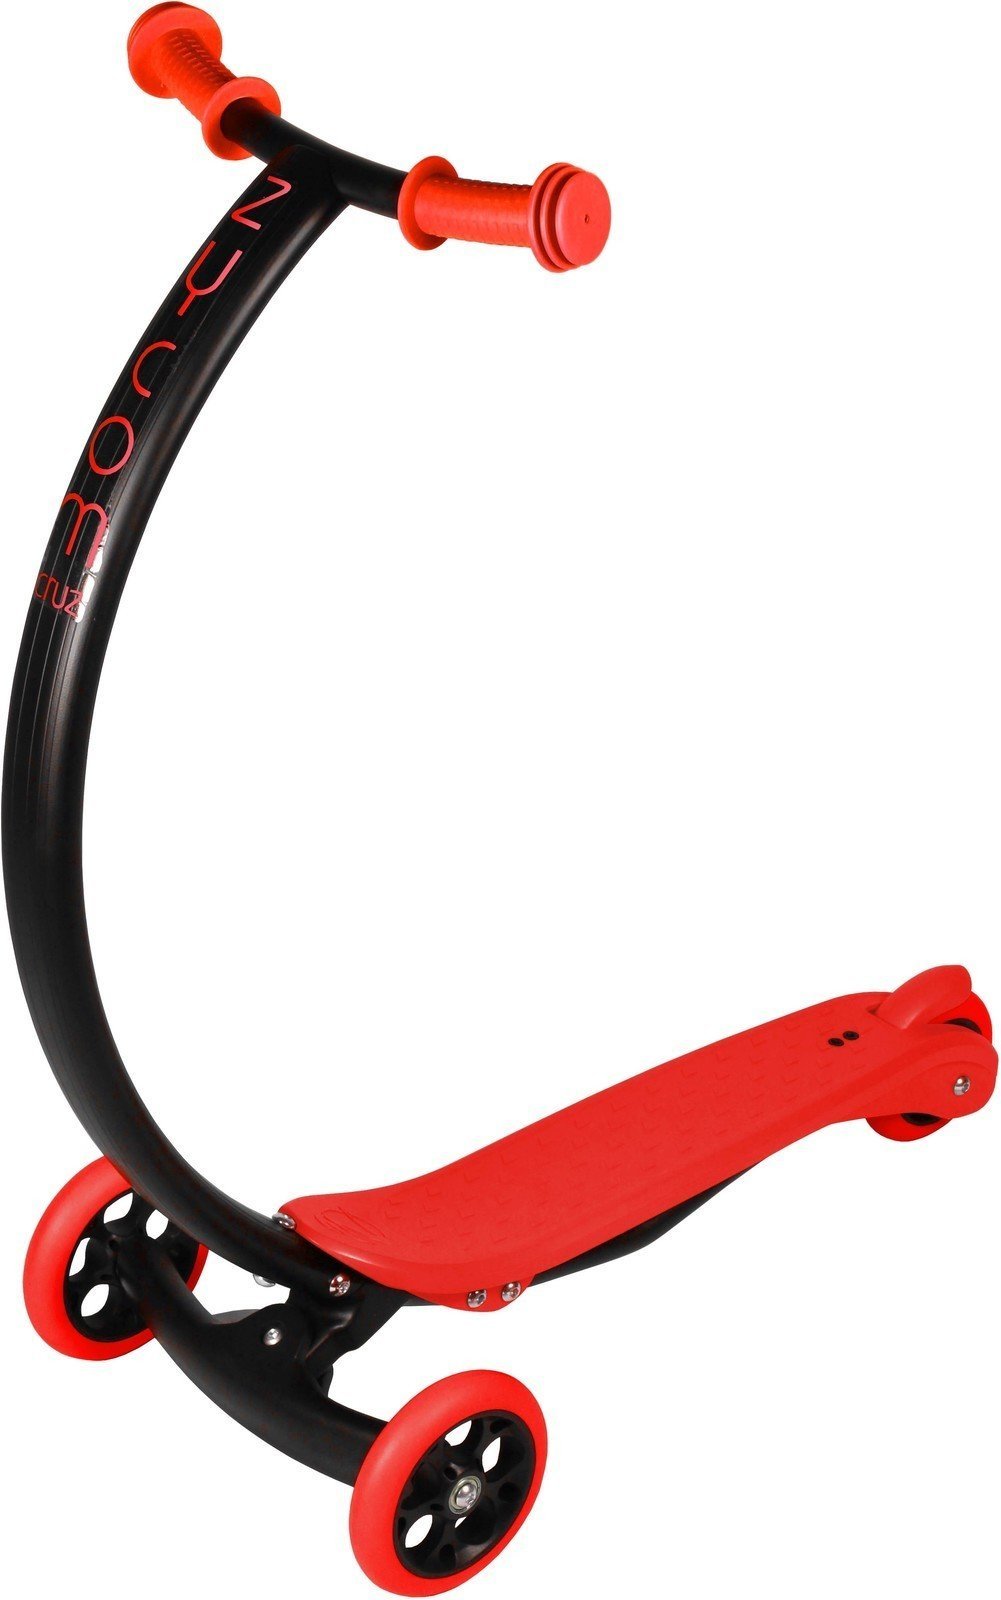 Klasyczna hulajnoga Zycom Scooter C100 Cruz black/red